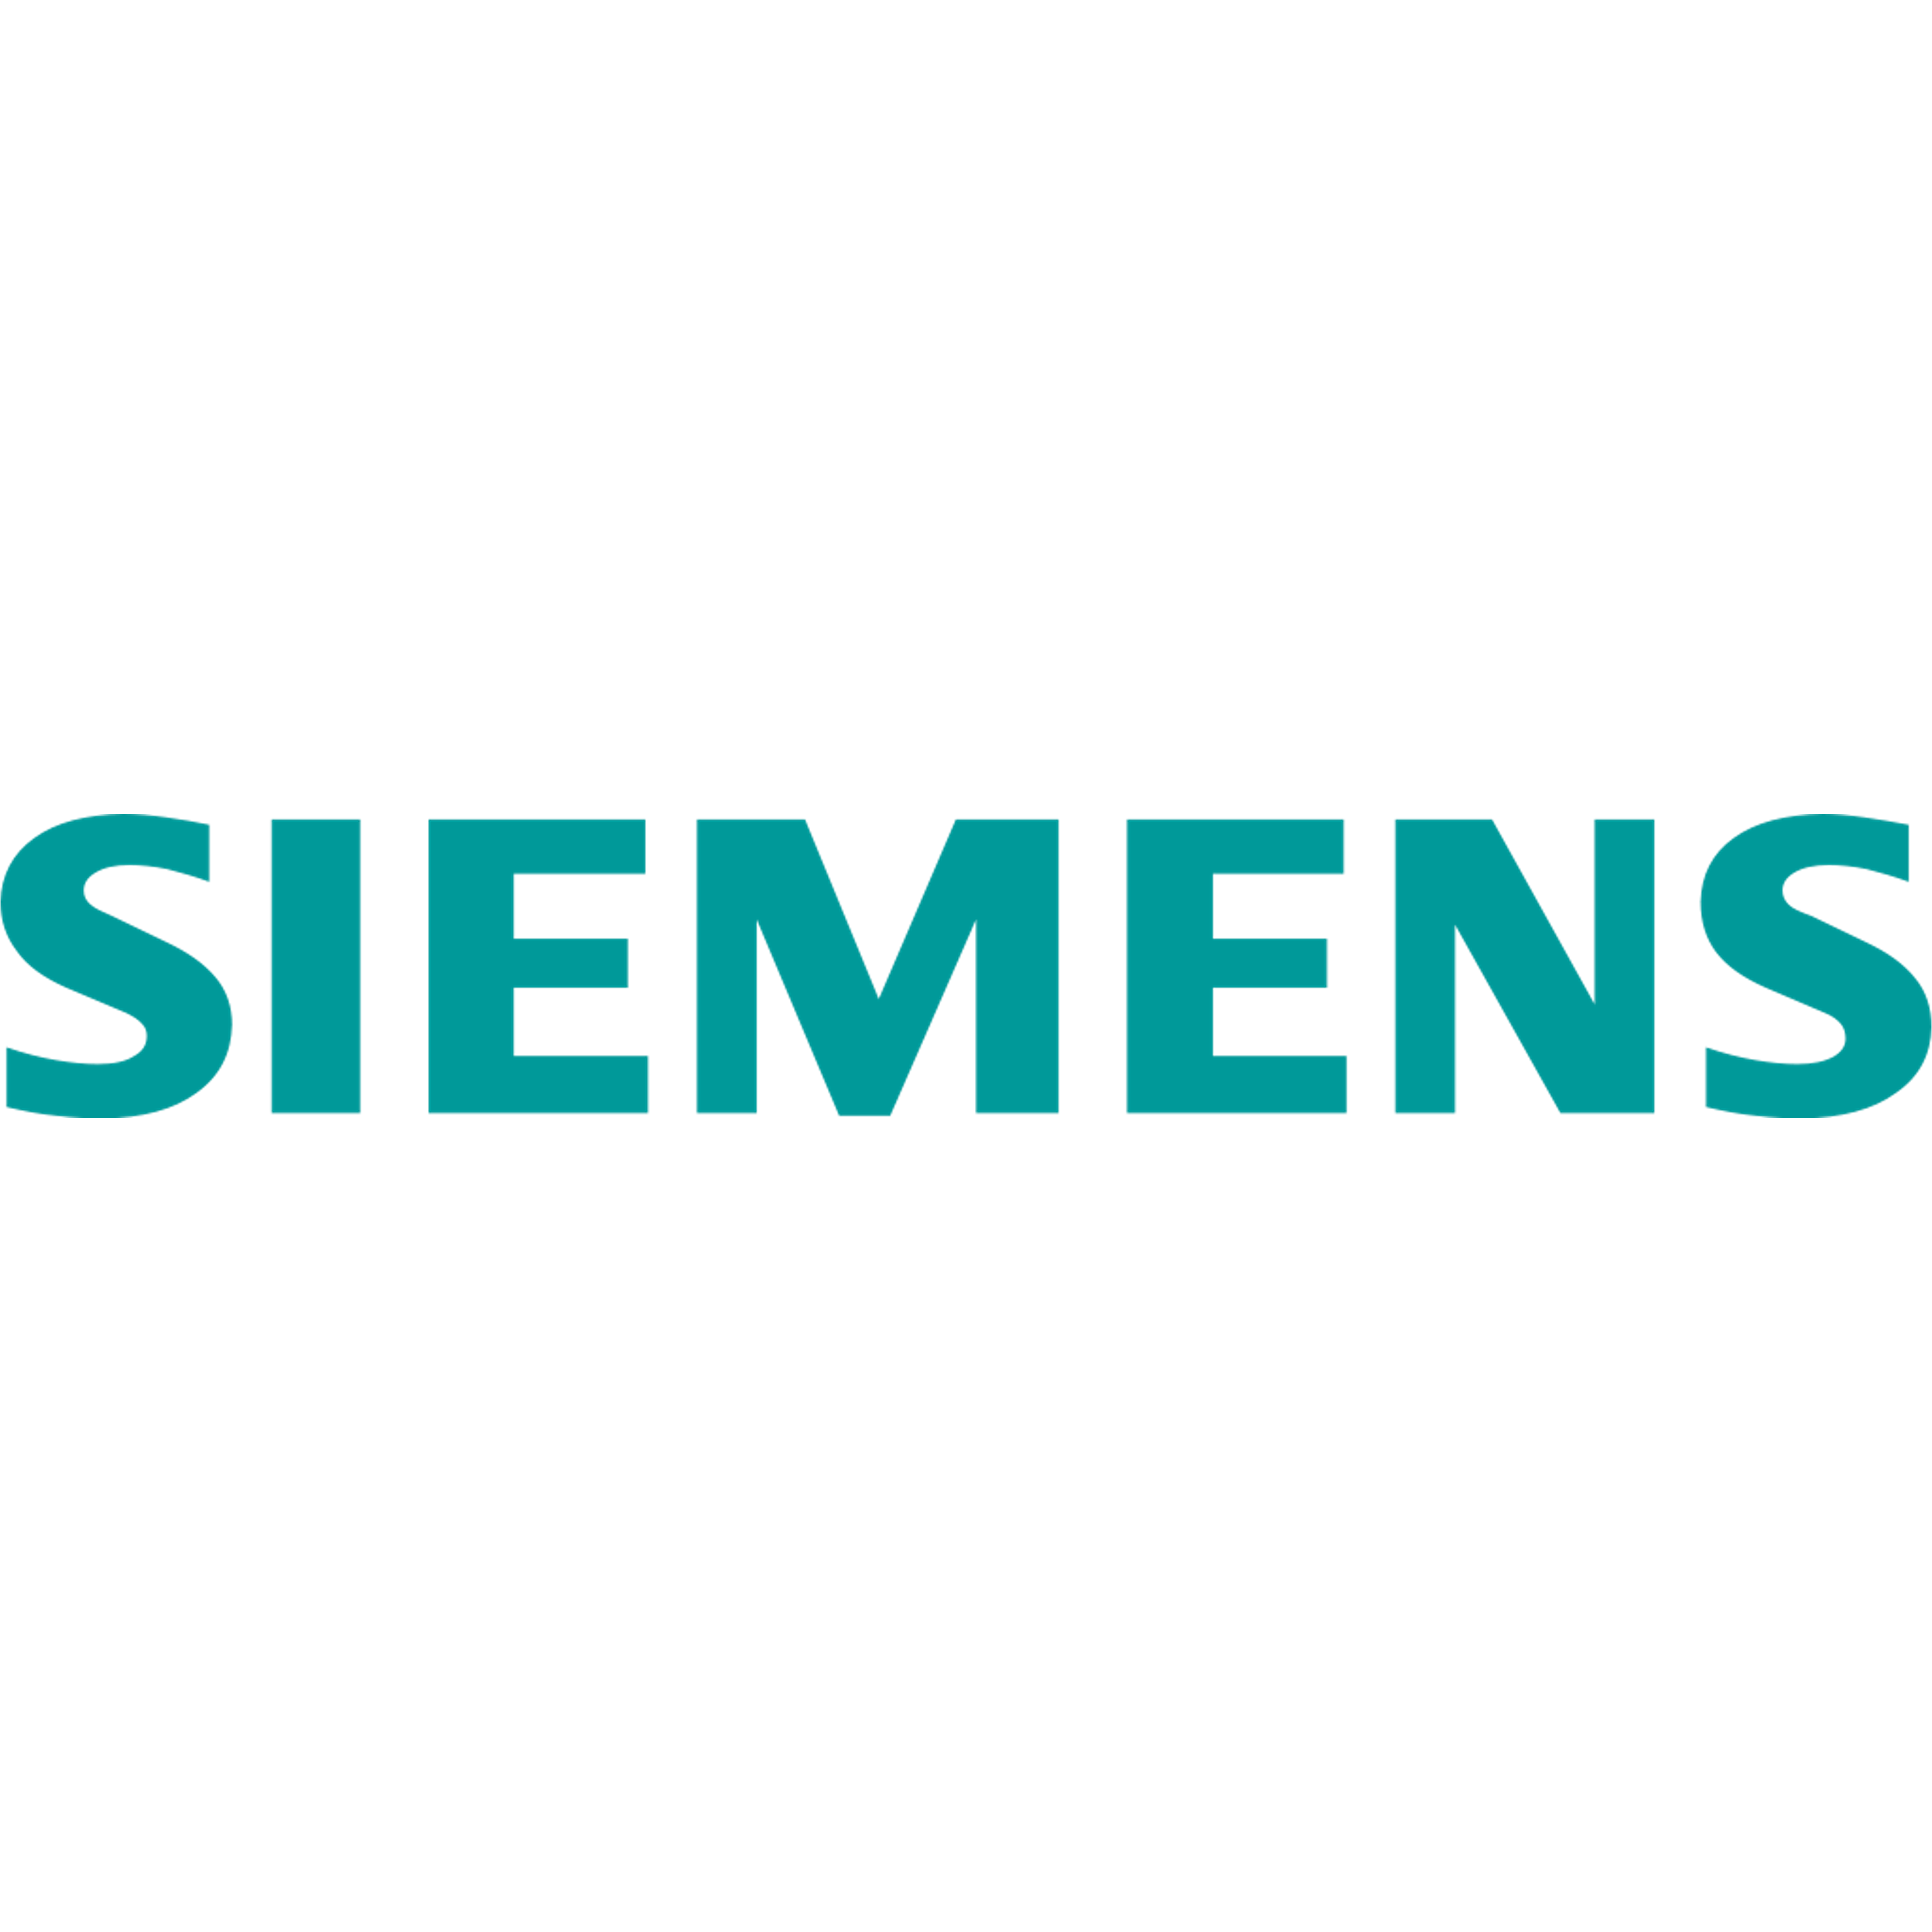 Equiptrack includes Siemens equipment